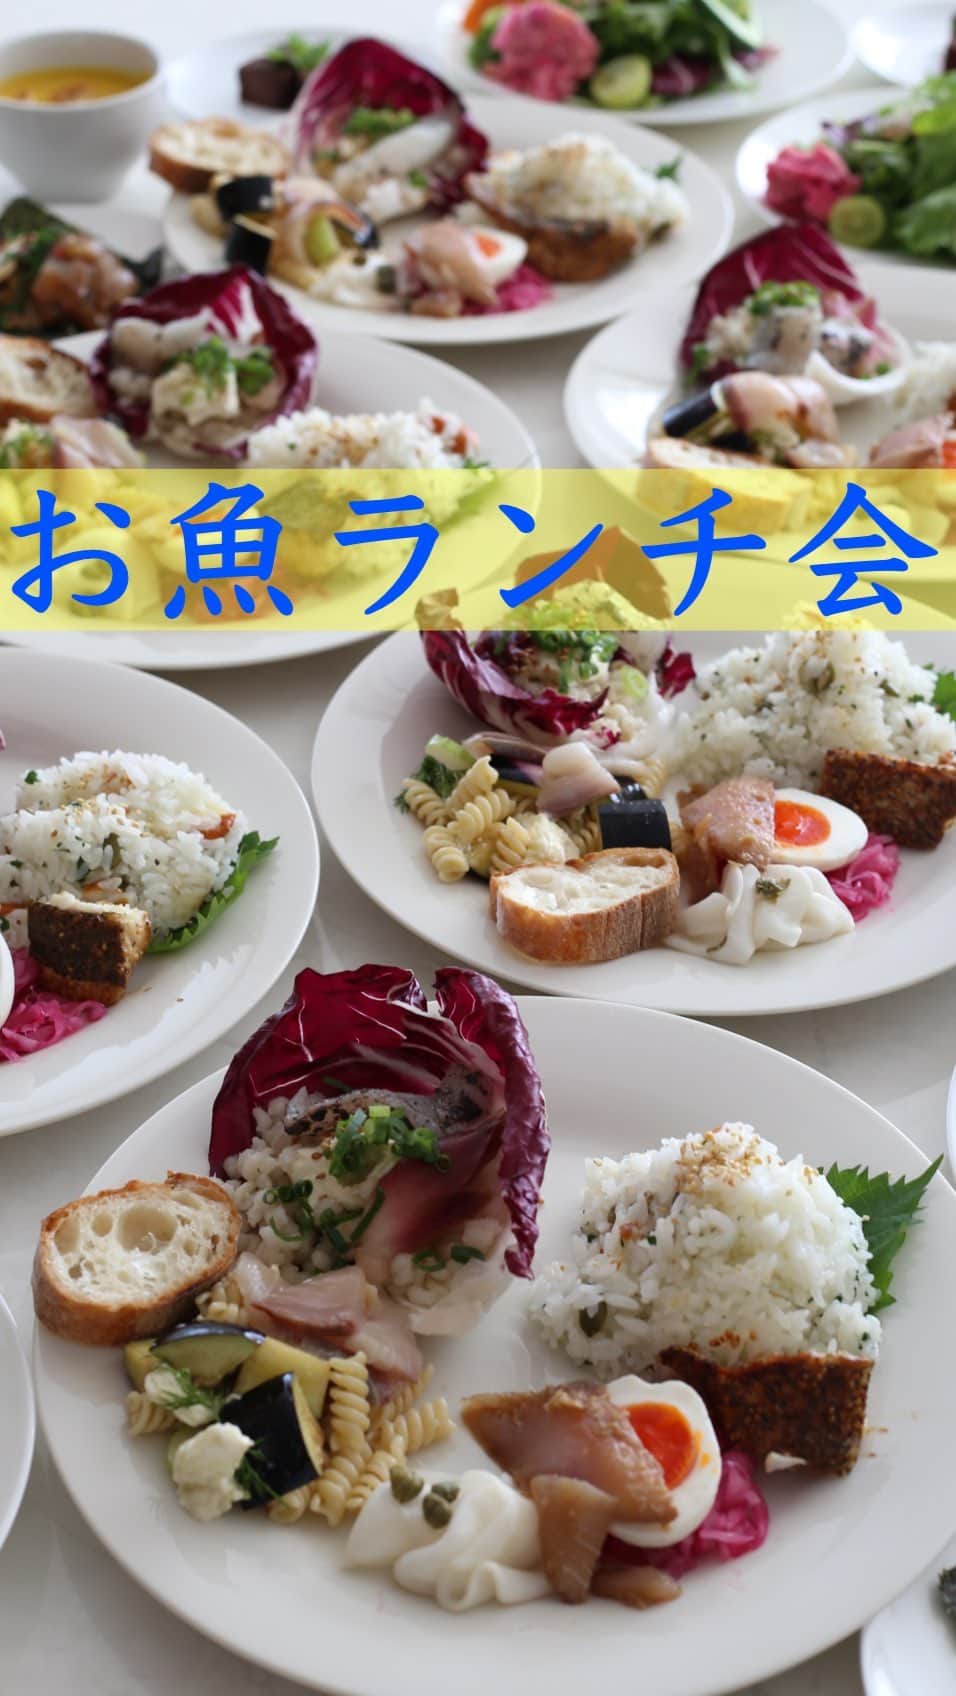 母熊?#お昼が楽しみになるお弁当??JAPANのインスタグラム：「. 3回目の開催となった お魚サブスク🐟フィシュル試食ランチ会✨ 母熊のお料理教室の生徒さん中心にご参加いただき、いつも笑顔いっぱい😆盛り上がっています！  母熊はフィシュルのプロモーターとして活動しているけど、別にノルマも何もないわけだし、自分ちで食べてインスタに投稿するだけでも全然いいのよね。でも本当にお得で美味しいので、せめてリアルに接している生徒さんたちにはこの美味しさをシェアしたい！そんなおせっかい虫がむくむく動いちゃって、月一ペースでこのランチ会を開催しているというわけです😄  こちらの動画はワン友としてお世話なっている @anzu_soramame さんが作ってくださったんです😍✨ 見せていただいて、とっても素敵な編集が気に入って、おねだりしてデータをいただきました🎶 参加者さんに確認したらインスタ投稿に賛成してくださいましたので、早速💕💕💕  今回も皆さんに喜んでいただき、どのかたもフィシュルの味わいをとても気に入って、早速申し込みされていました！  これまでの皆さんのご感想の中で、試食するまで勘違いしていたいくつかのことを書いてみますね。  ・１パックが思っていたより大きい！もっとめっちゃ小さいイメージだった！ ・解凍して味付けなしで食べられるとは思ってなかった！何かしら味付けが必要なのだと思っていた！ ・解凍時間がめっちゃ早い！前の晩に冷蔵庫に移したりしないと食べられないと思っていた！ ・骨のあるお魚もあると思ってた！加熱が必要なパックのお魚も骨がない！食べやすくて助かる✨ ・試食って言うから、ほんの少しずつ食べるだけで、おなか一杯になんてならないと思っていた！(食べきれなくてお持ち帰りいただくほど精一杯”おもてなし”させてもらっています😋)  お魚は50％offクーポンでお得に買ってね😍👛✨ 5分で食べられるお魚のサブスク @fishlle.official #フィシュル です！ 6パックセットで、そのうち生食OKのが4～5パック！ 解凍するだけでパッケージを開けたらすぐに食べられるんですよ✨  フィシュルは漁師直送の天然魚、未利用魚の#サブスク サービスです。 お魚が体に良いのはわかってる！ でもお魚って、どうしてもちょっと面倒です💦 調理方法がわからなかったり 小骨が気になったり 下処理も手がかかるし なんかちょっと生臭い… レパートリーもないし💧  言い訳ばかり💦 これじゃ魚料理なんてするわけないね😂  フィシュルのお魚は鮮度抜群な天然国産魚で バラエティーに富んだ味付けがしてあって 着色料保存料なしで安心安全で #フードロス削減　にもなる😆  あまり耳馴染みのない#未利用魚 を積極的に利用しているフィシュル。 カタチが悪かったり、傷があったり、数が揃わない！とかだけで価値がつかない「未利用魚」が総水揚げ量の30～40％もあるんですって！！！ そのお魚たちは隠された希少な海の幸✨ 漁師町でしか食べられないような美味しさをおうちで味わえるんですよ。  フィシュルさんから超お得なクーポンを発行していただきました。 公式サイトでは通常新規購入のかたは30％offなのですが、 母熊のクーポンは50％off😍👛✨✨  サブスクをクーポンで始めると、何か月か解約できないとかがご心配かと思いますが、フィシュルさんはそんなことありません。 発送の5日前までに手続きすればいつでも中止できると明記されていますのでご安心くださいね。  🐡🐟🐠🐡🐟🐠 母熊のフィシュルクーポン 新規購入者様50％off 【rosso】 ※6パックセット限定ですのでご注意ください 🐡🐟🐠🐡🐟🐠  今流しているストーリーから公式サイトに飛べますので、ぜひこの機会に高品質で美味しいお魚を食べてみてね！ ストーリー終わったらハイライトを見てね😄  #PR #locari #ランチ#おうちごはん  #おうちごはんLover #フーディーテーブル #マカロニメイト#母熊のレシピ動画 #母熊チャンネル」